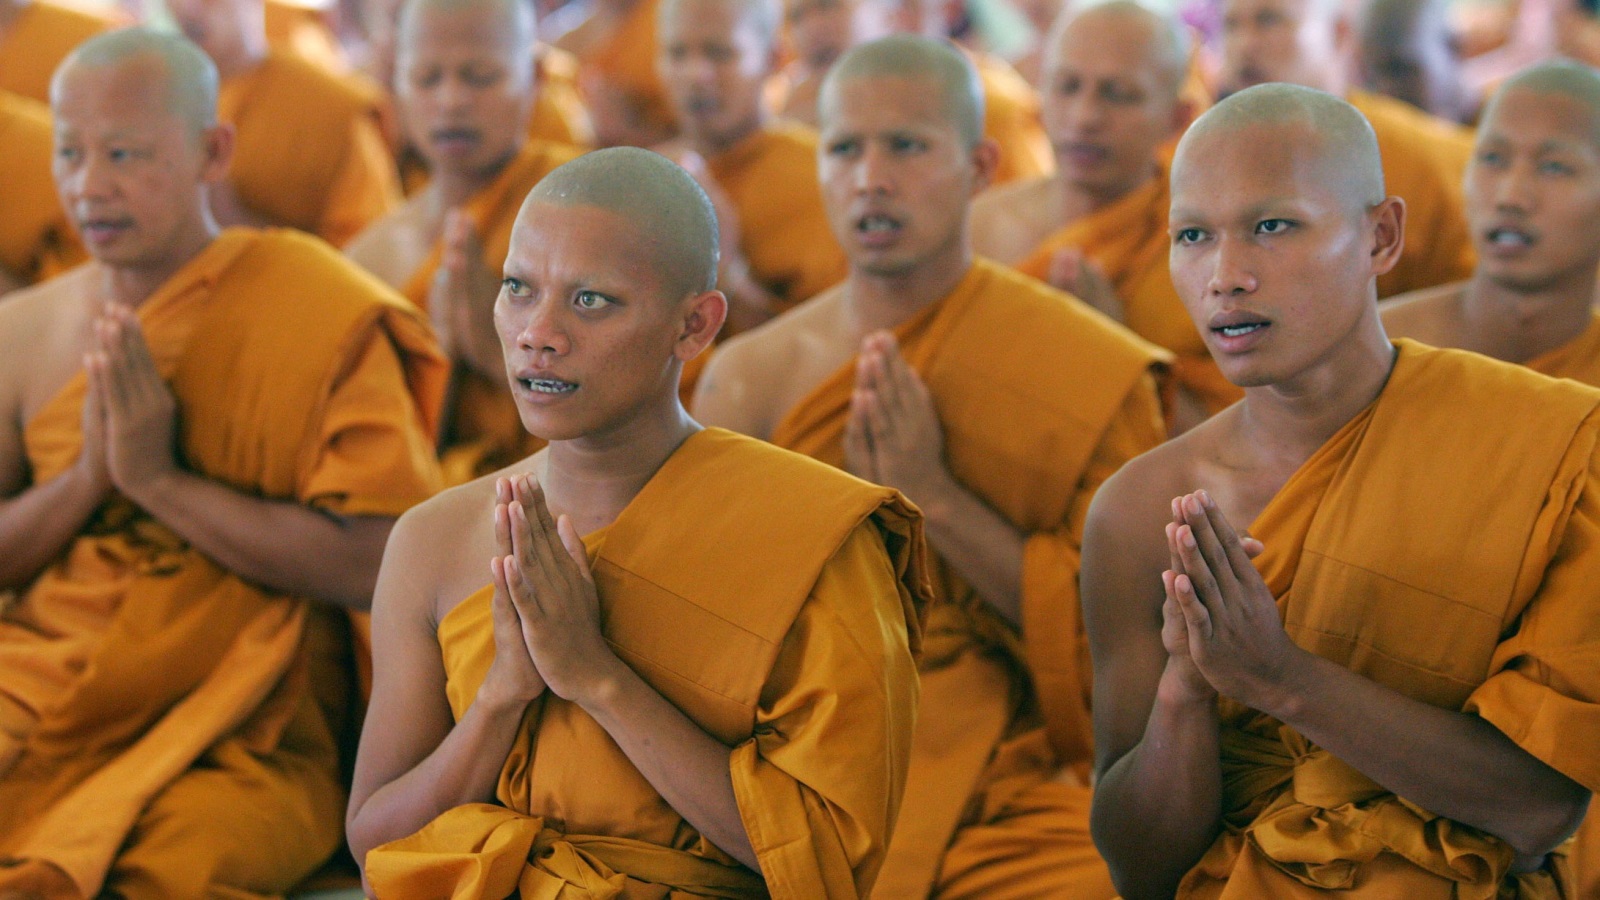 بعد مرور أقل من خمس سنوات على ثورة الزعفران، كان رهبان بورما على الشاشات يتوعدون في وسائل الإعلام التأثير الخبيث للمسلمين على الأمة البوذية